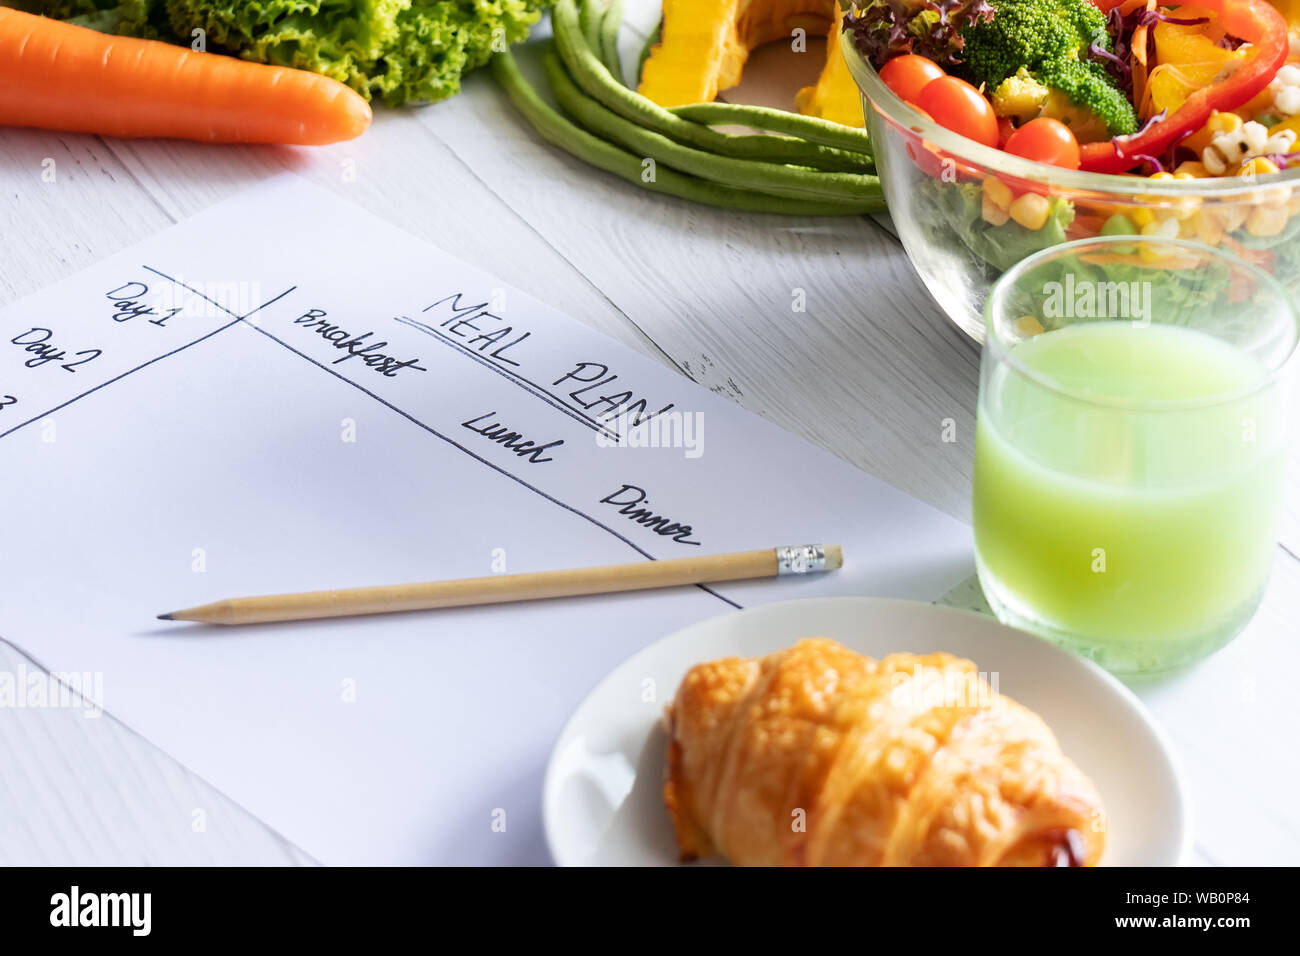 Le contrôle des calories, repas, régime alimentaire et perte de poids concept. Vue de dessus de table repas sur papier avec salade, jus de fruits, pain et légumes Banque D'Images